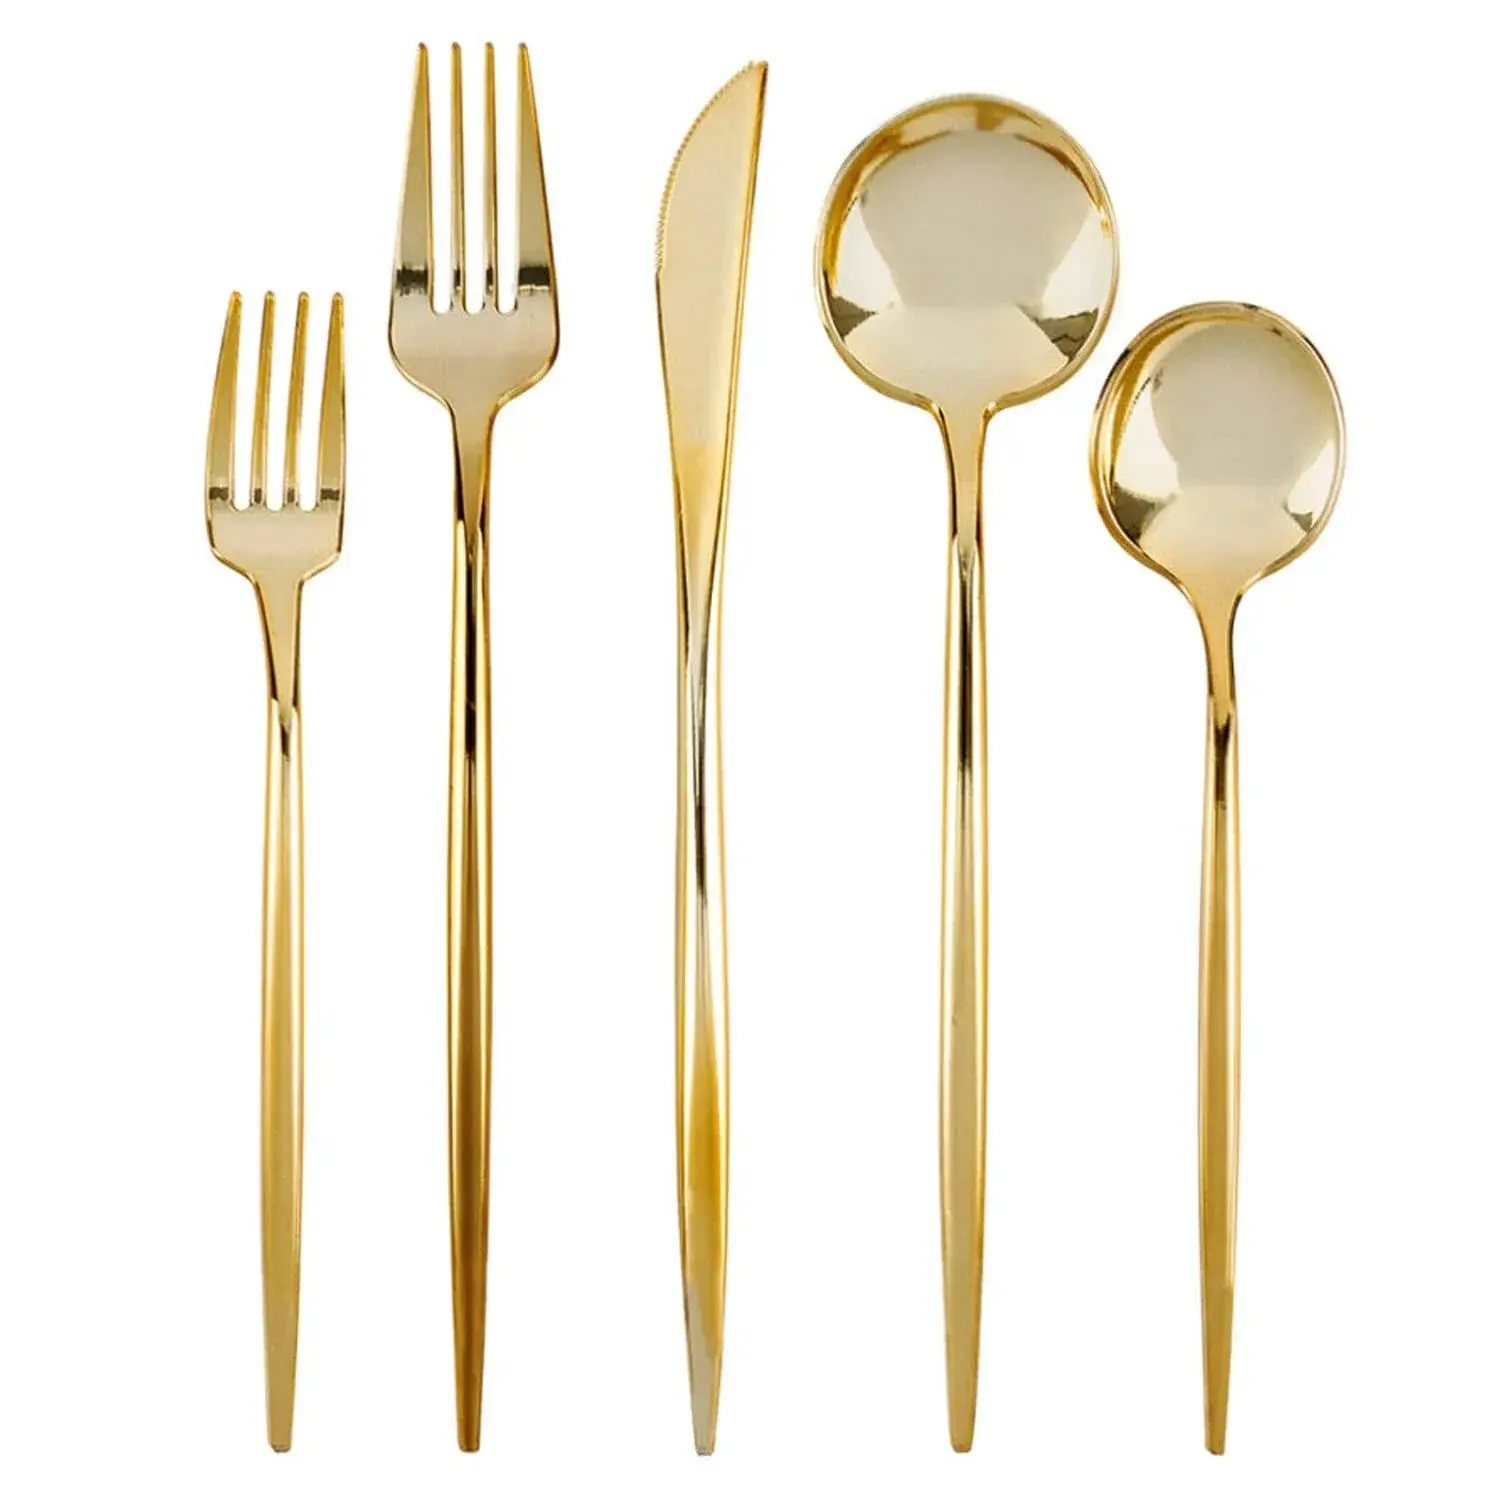 Nuovo arrivo Set di argenteria monouso in plastica dorata include forchette cucchiai e coltelli per matrimonio o festa